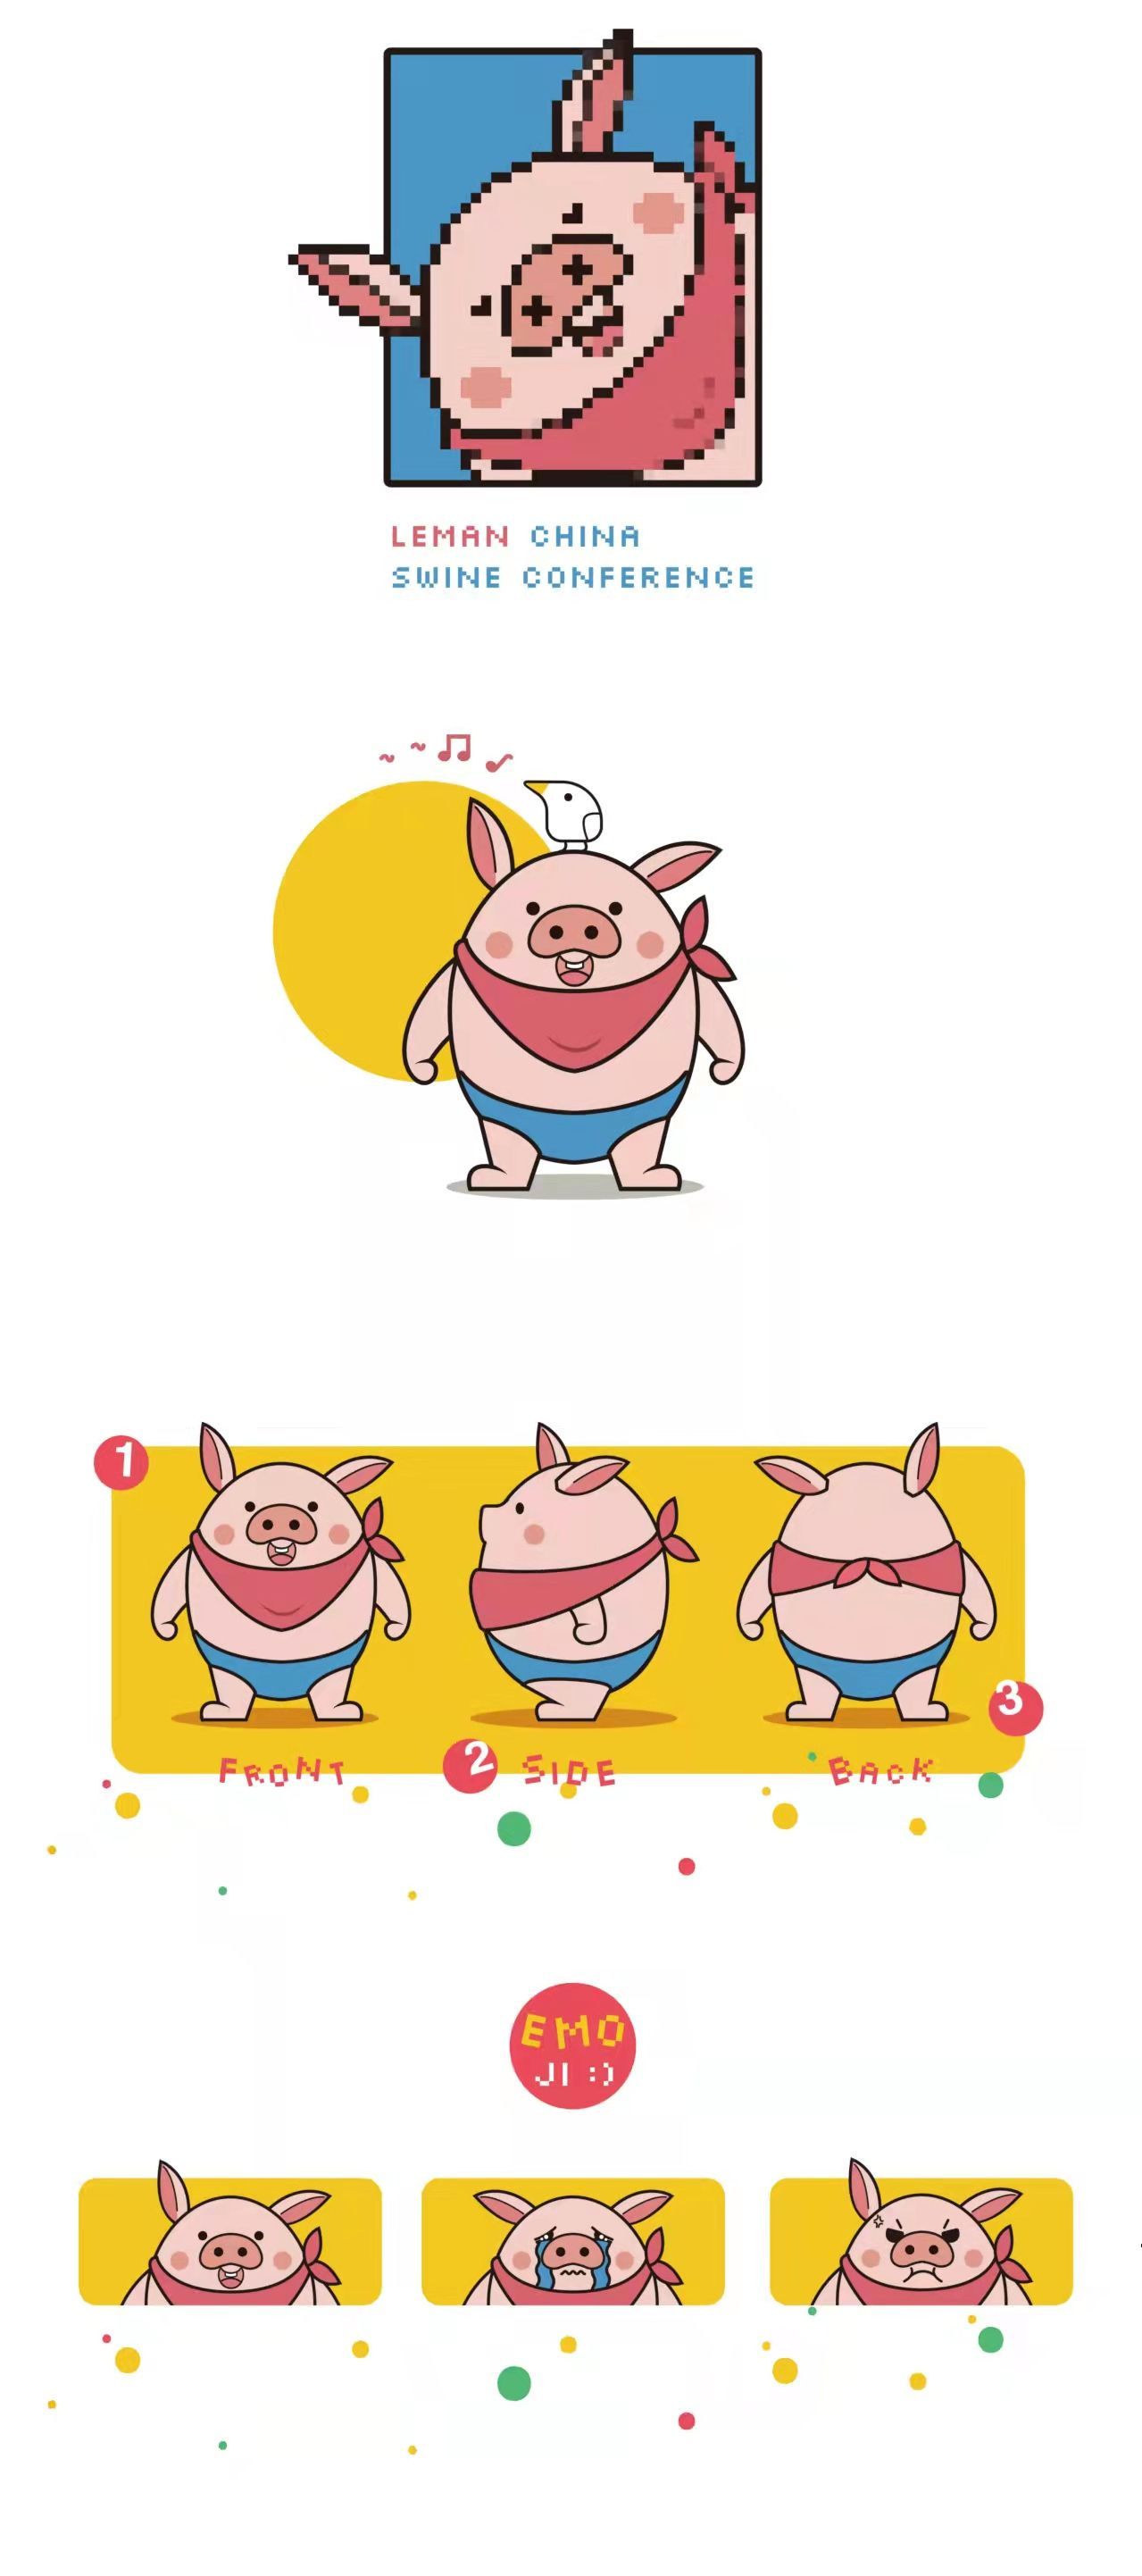 《李曼养猪大会吉祥物设计》图0